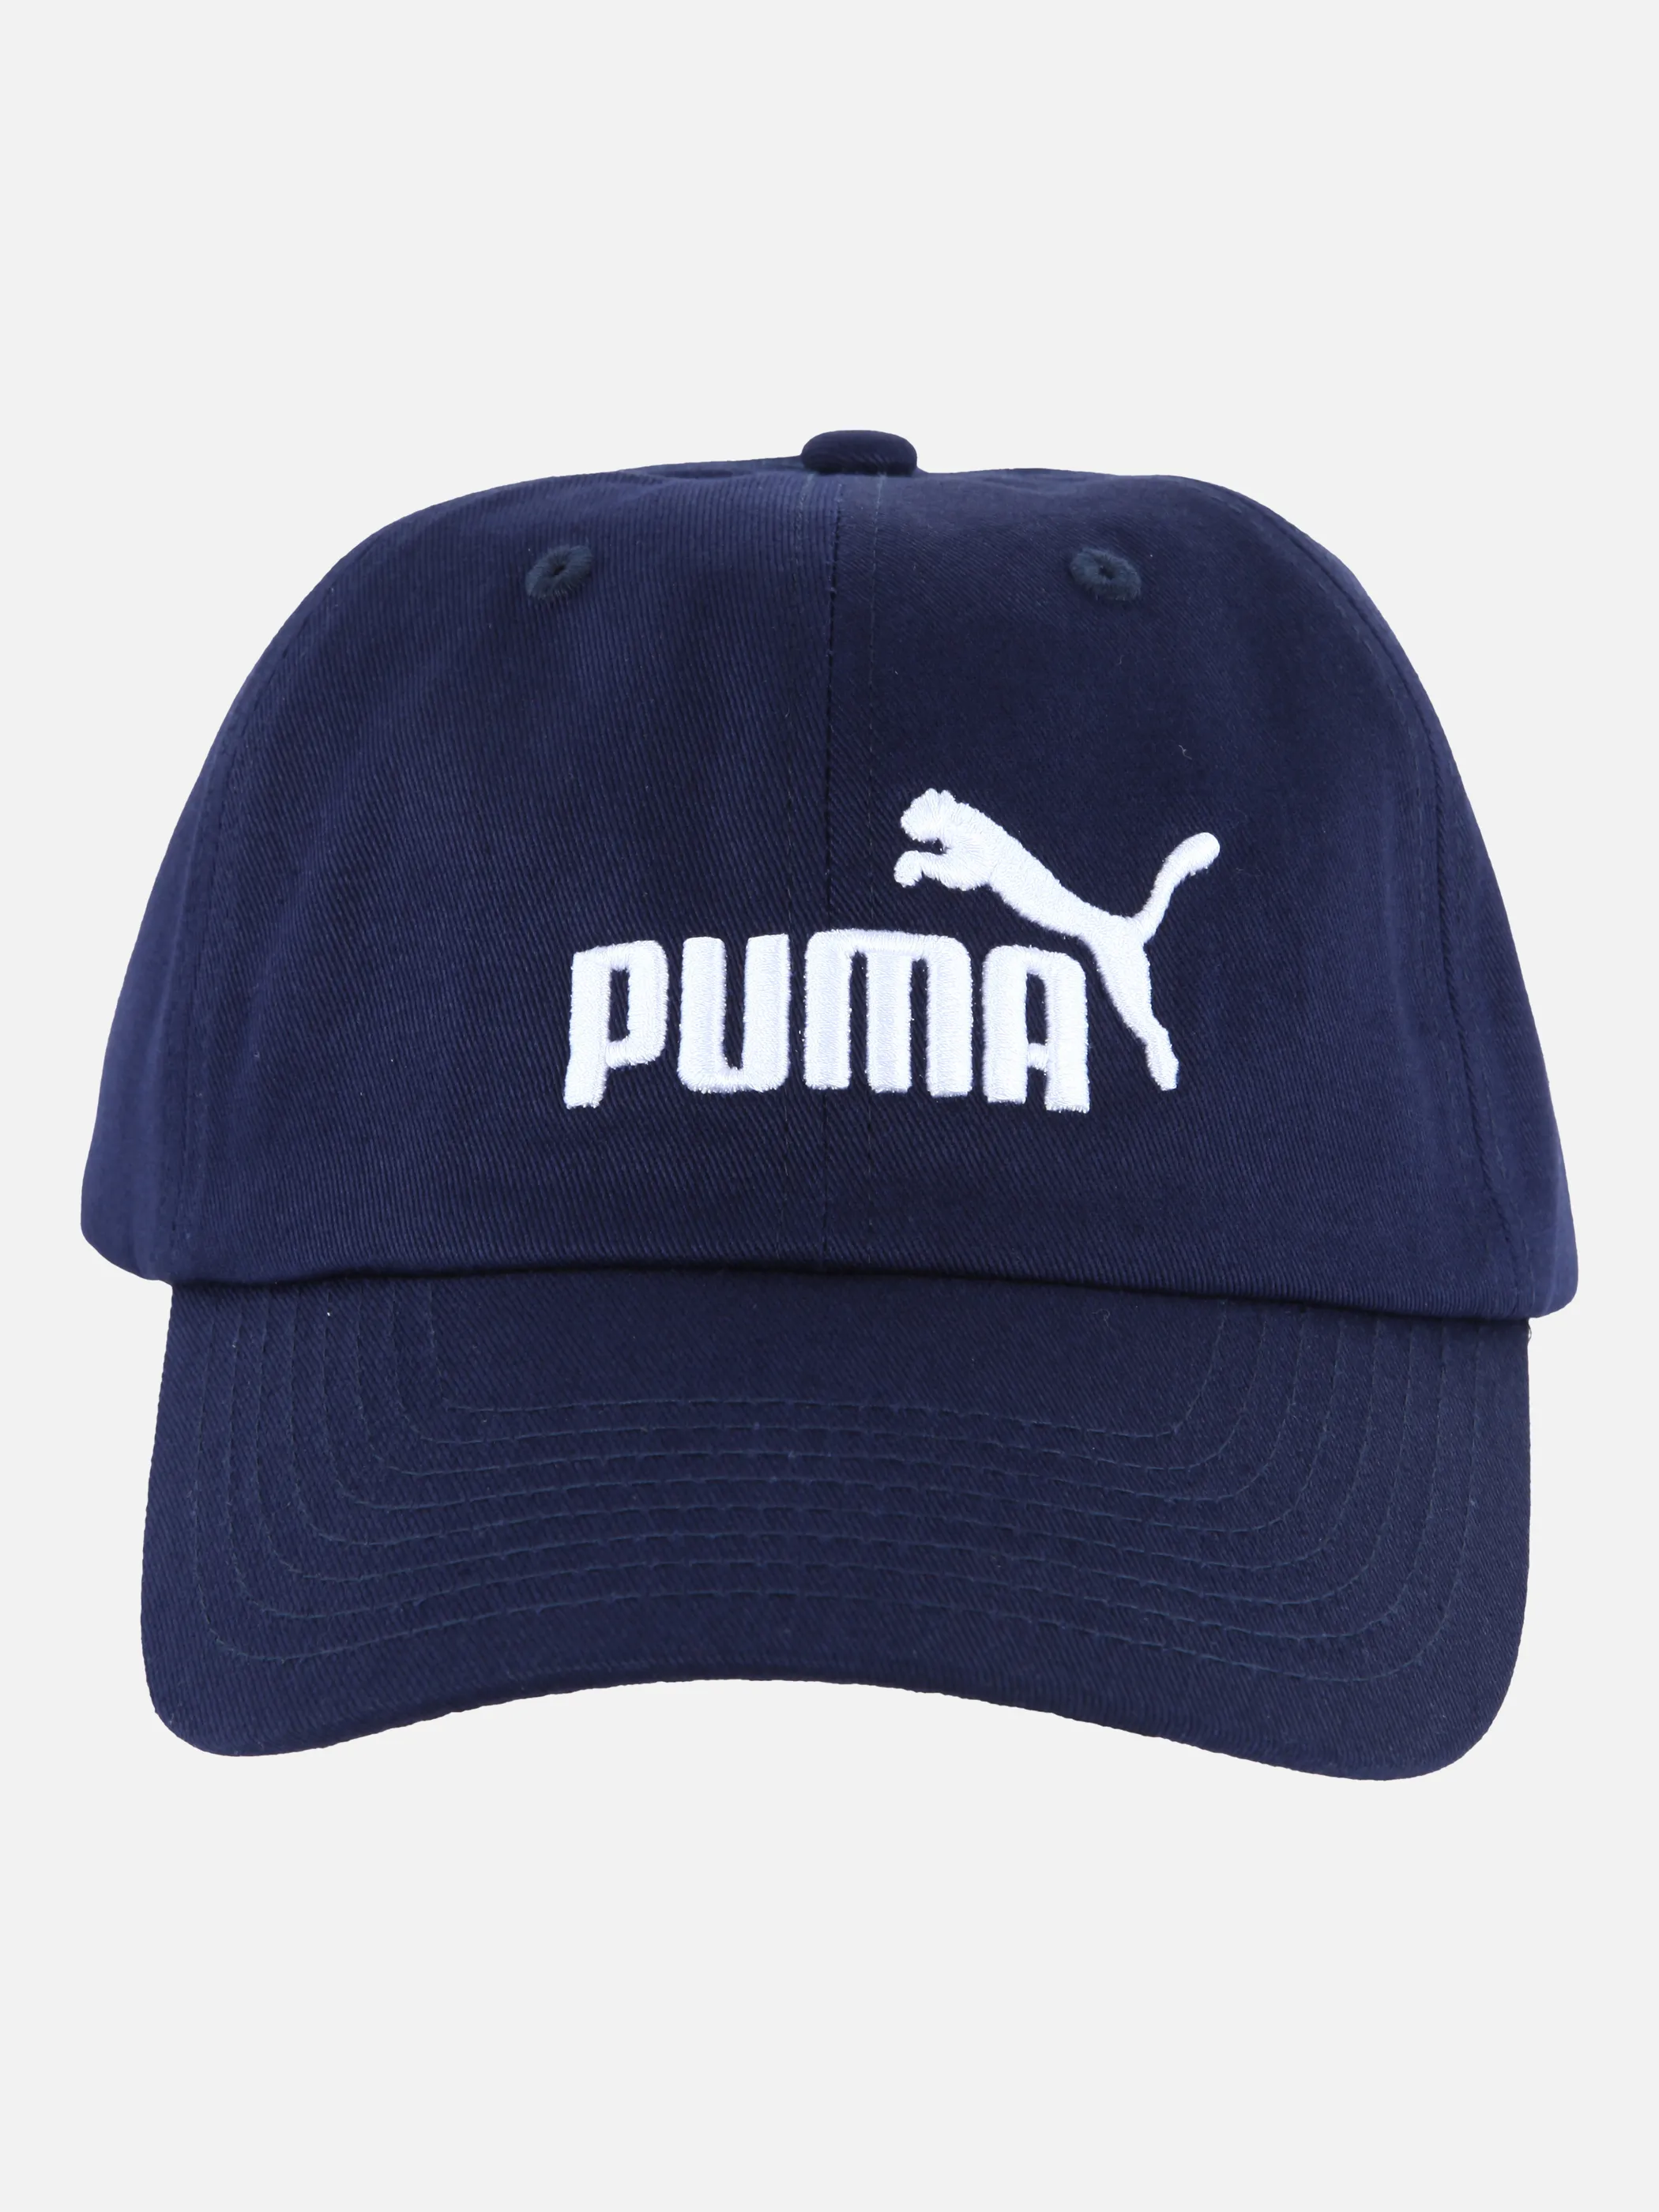 Puma 52919 Puma ESS Cap Blau 834558 18 1